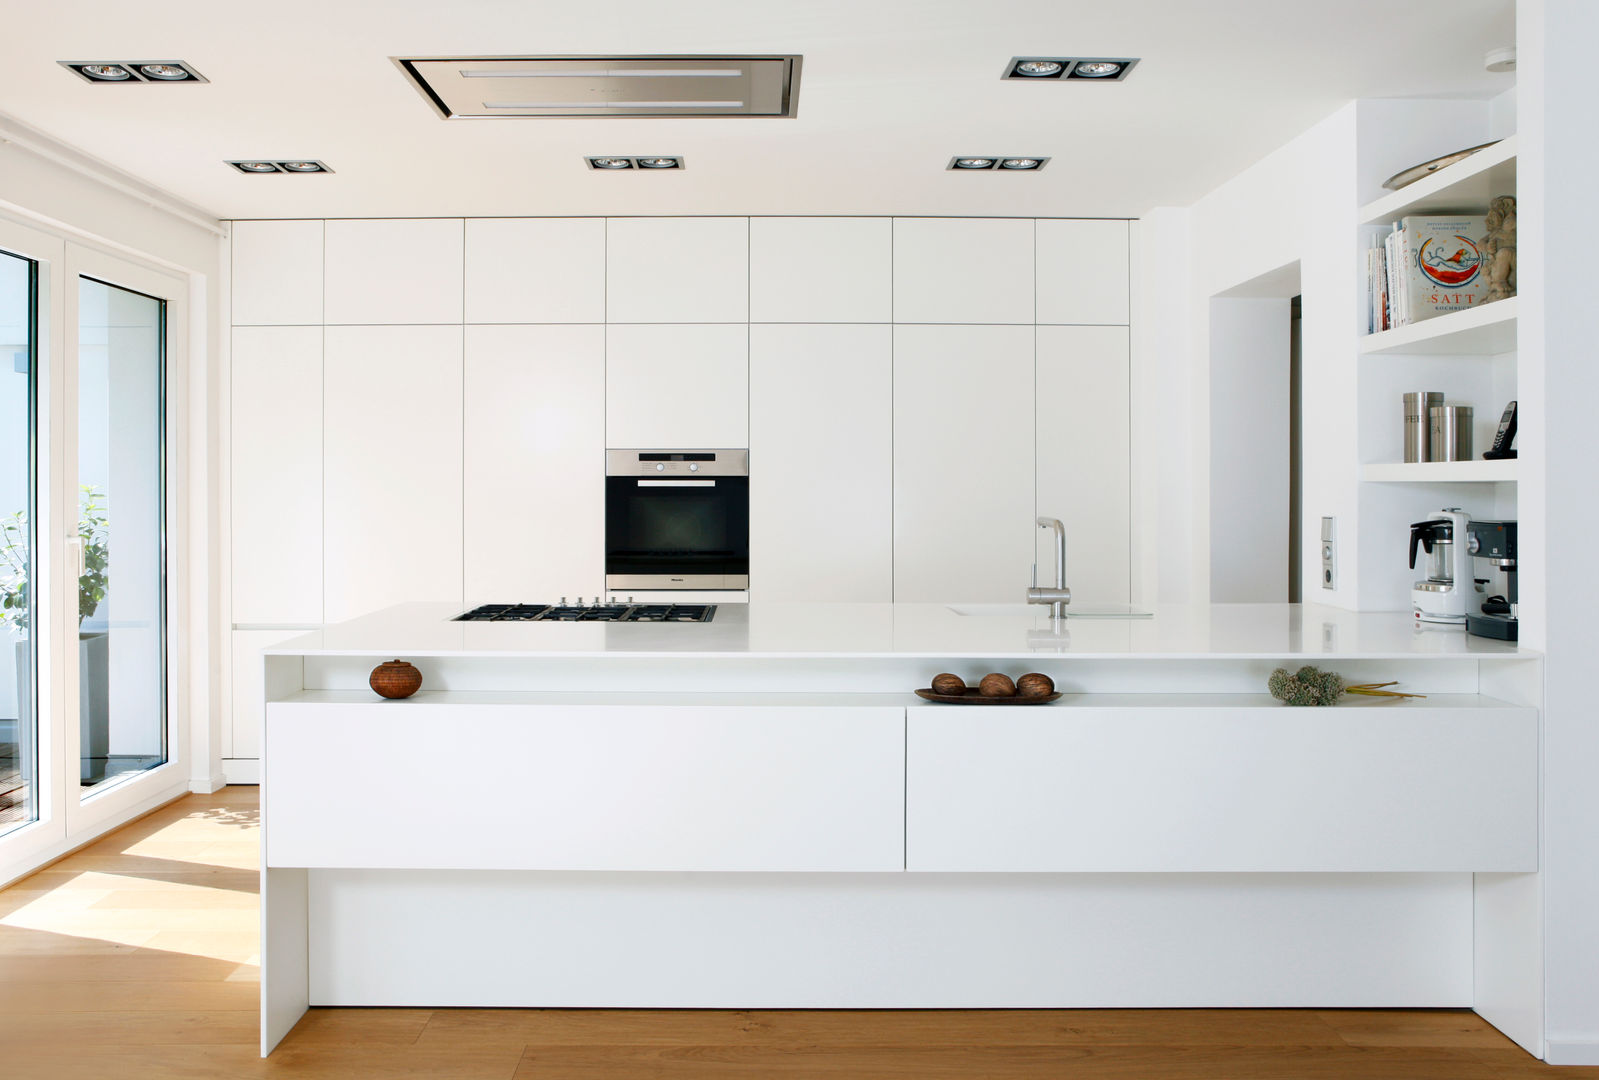 Küche R., rother küchenkonzepte + möbeldesign Gmbh rother küchenkonzepte + möbeldesign Gmbh مطبخ